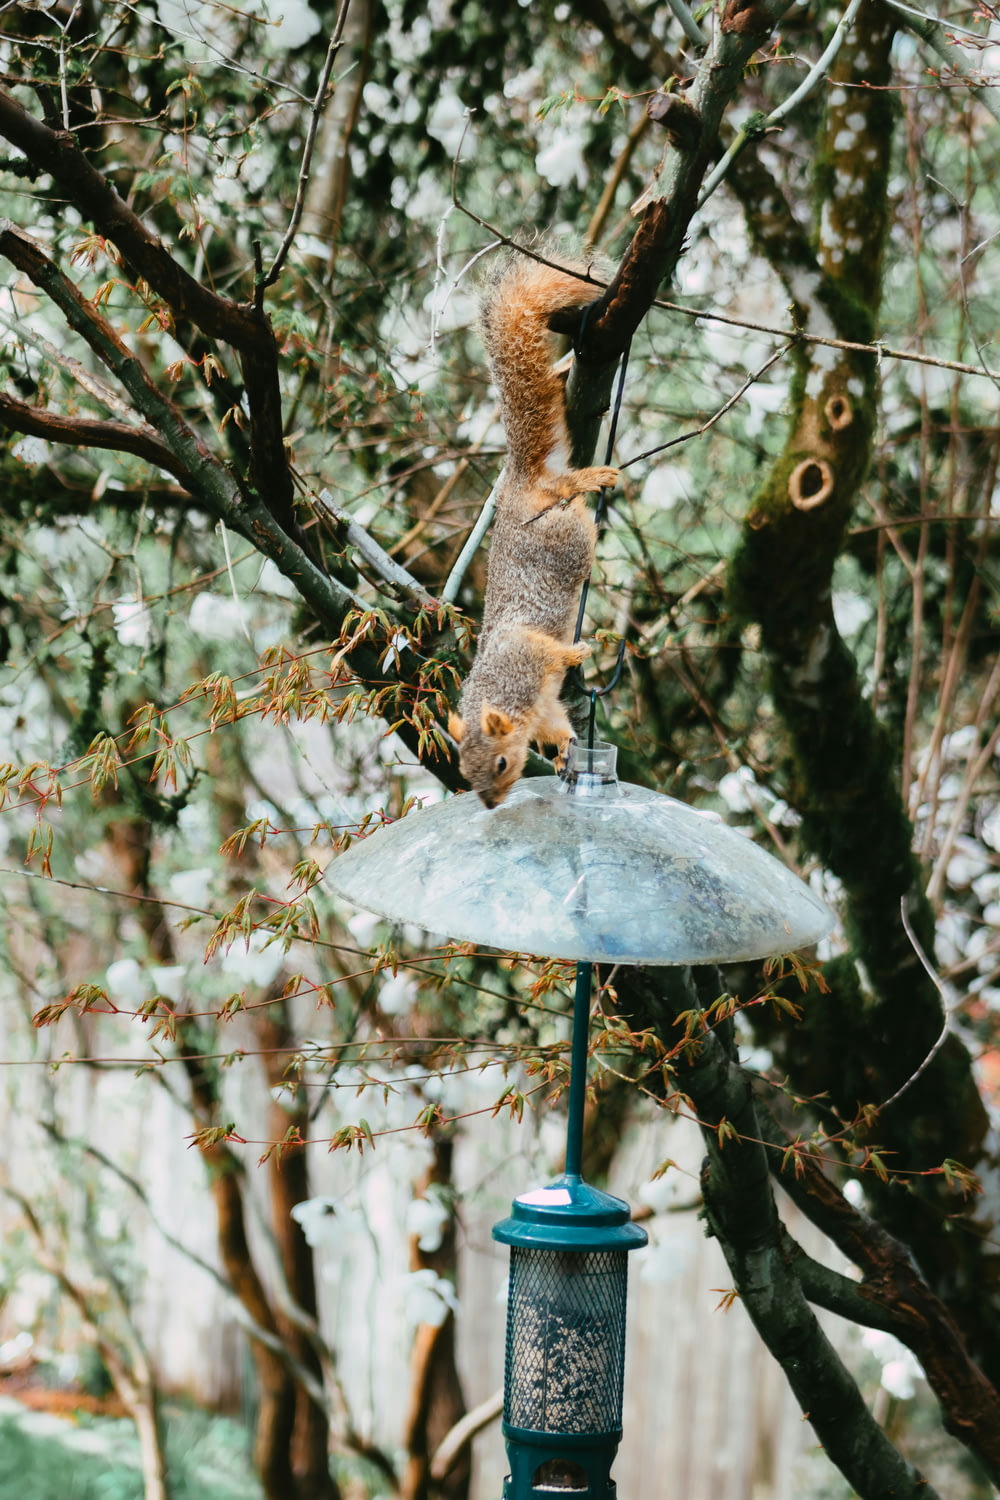 나무의 새 모이통 위에 있는 다람쥐